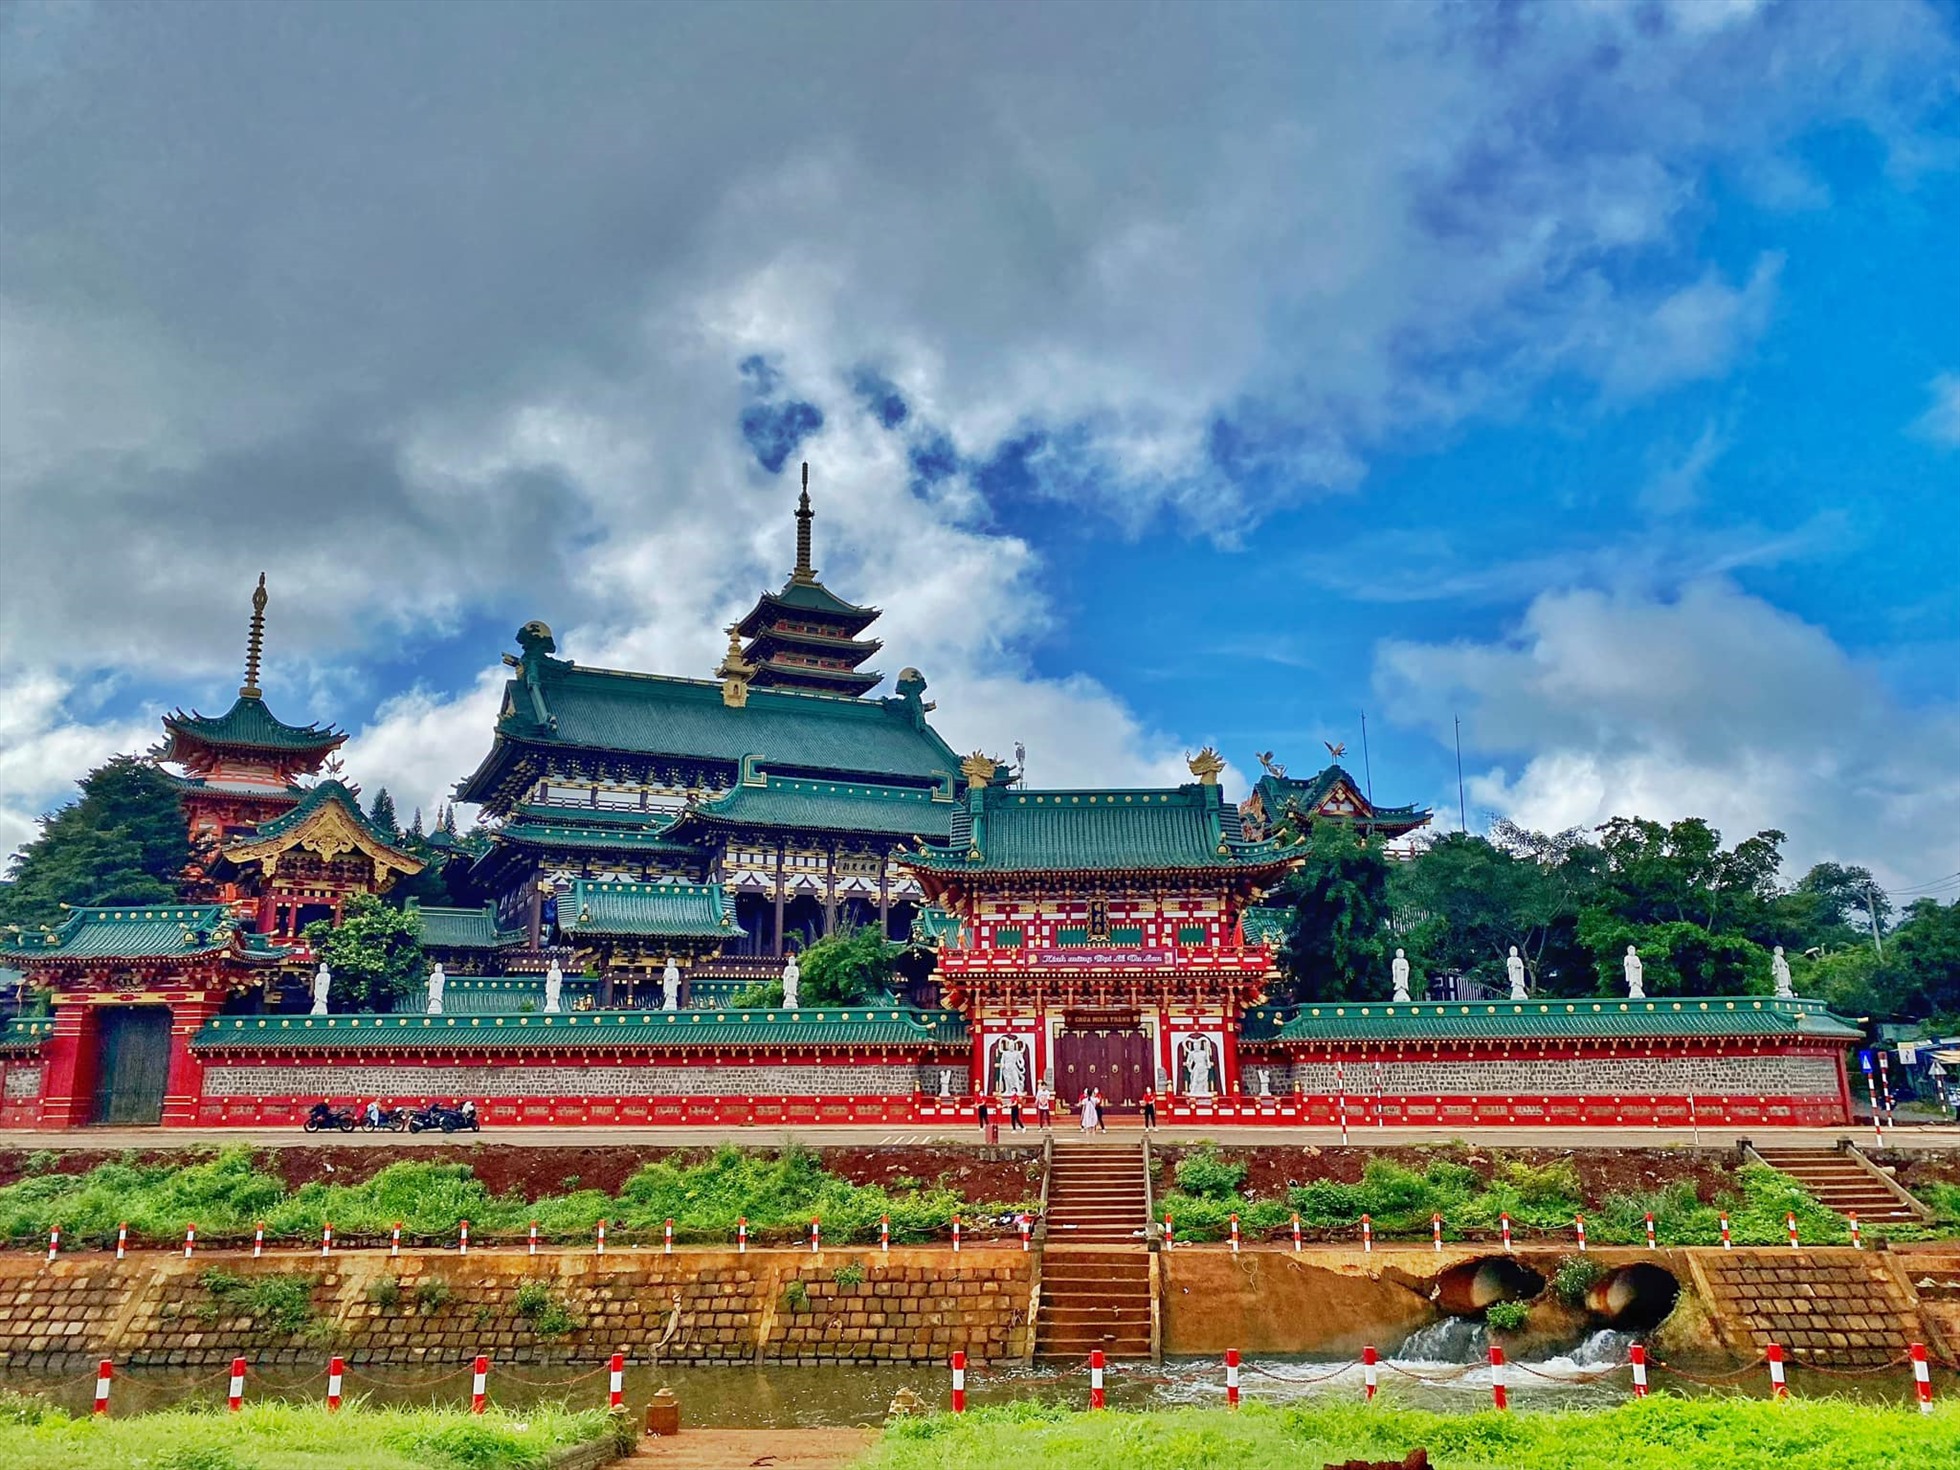 Chùa Minh Thành - Ngôi chùa mang phong cách Nhật Bản giữa phố núi Gia Lai